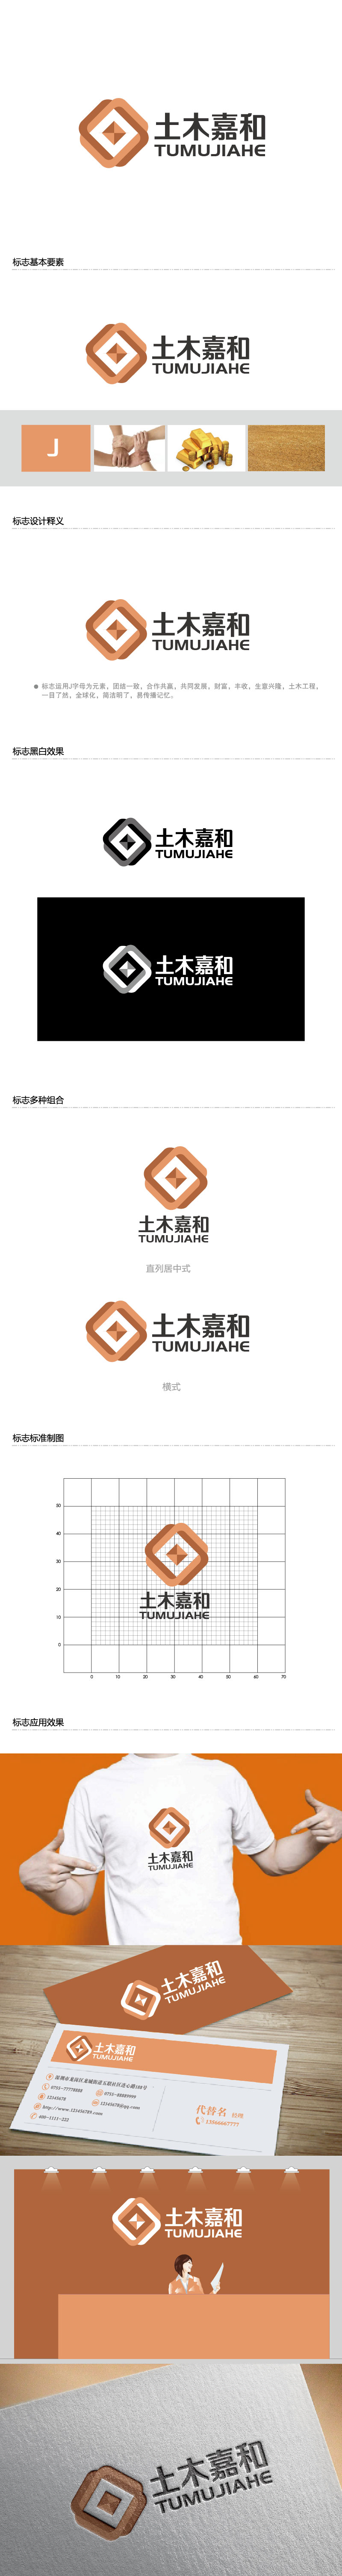 李贺的北京土木嘉和工程咨询有限公司logo设计